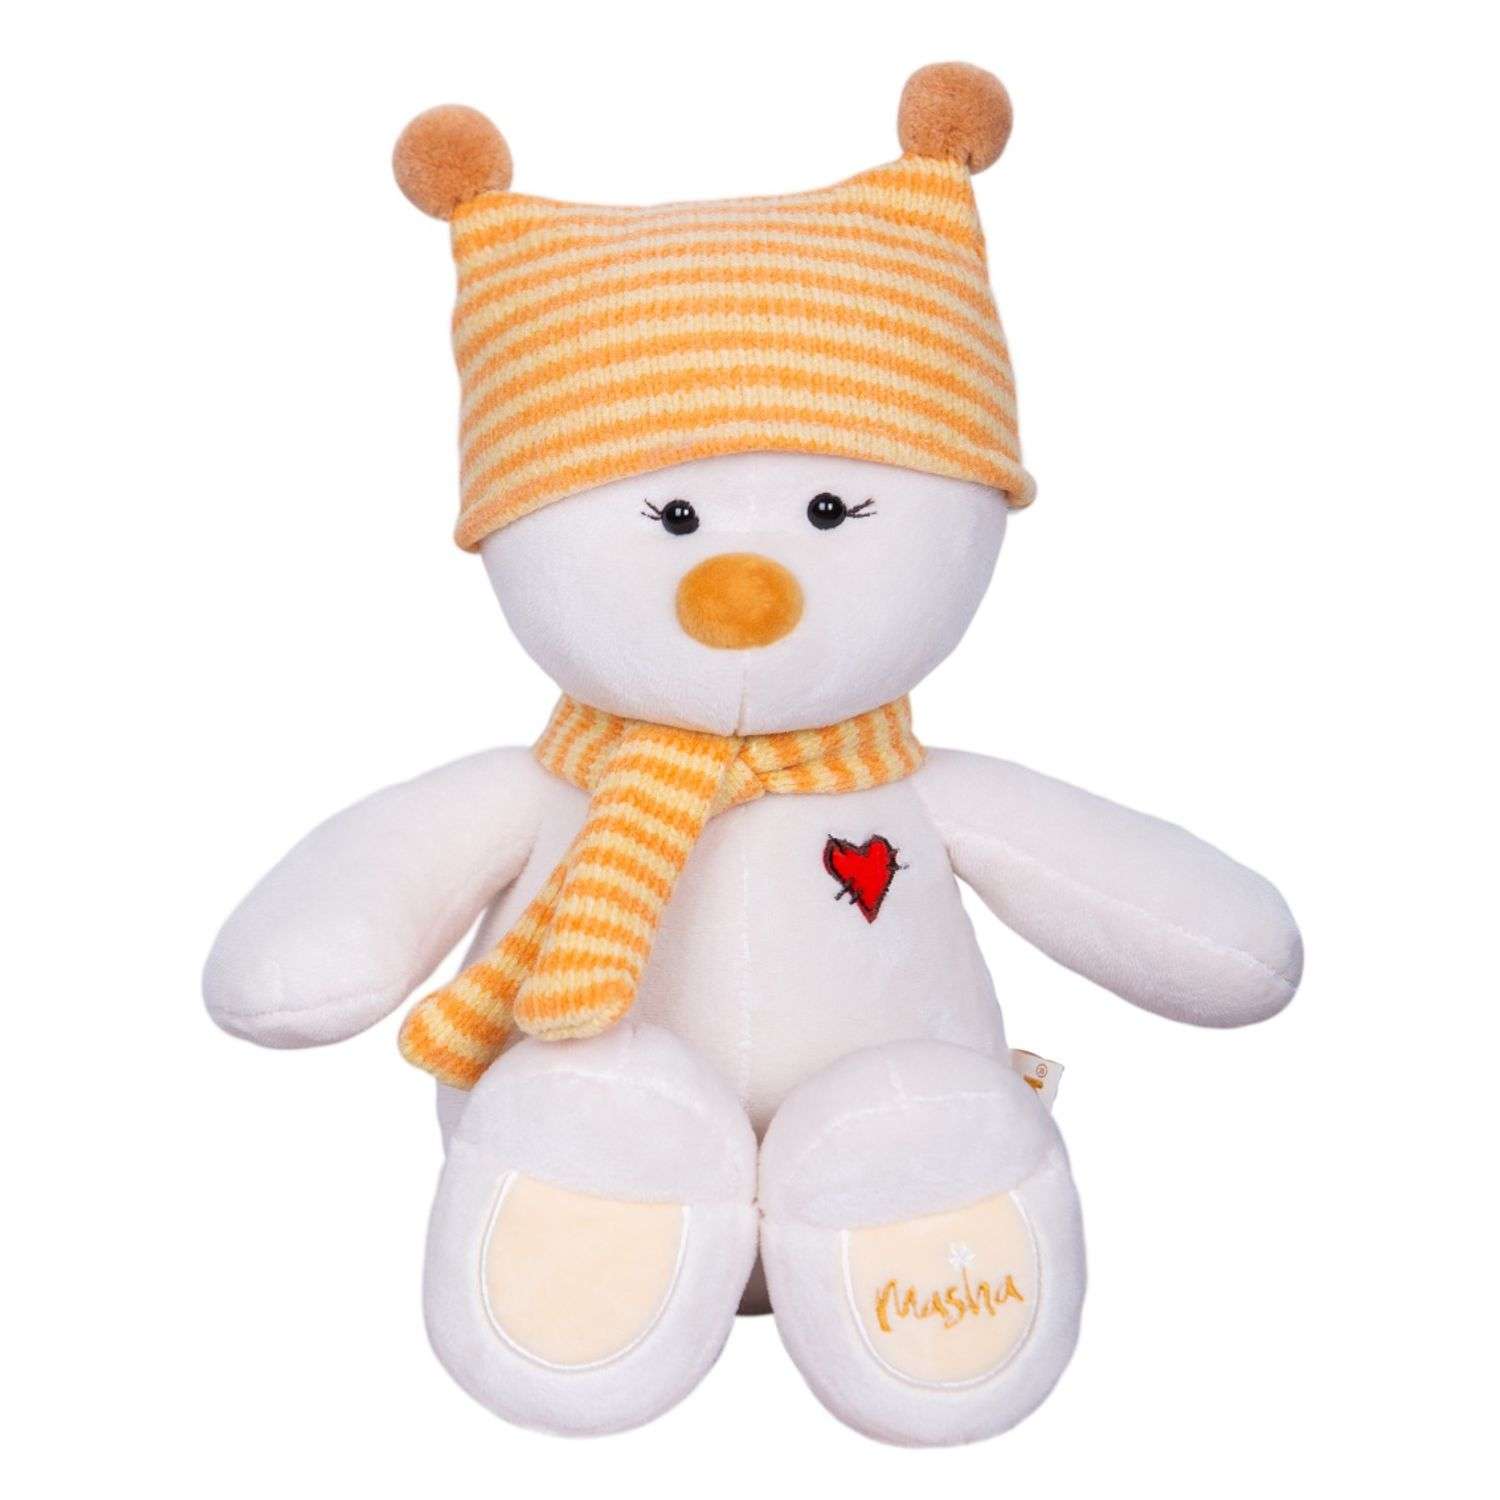 Мягкая игрушка KULT of toys плюшевый медведь masha в подарочной коробке для девочки в шапке 30см - фото 1